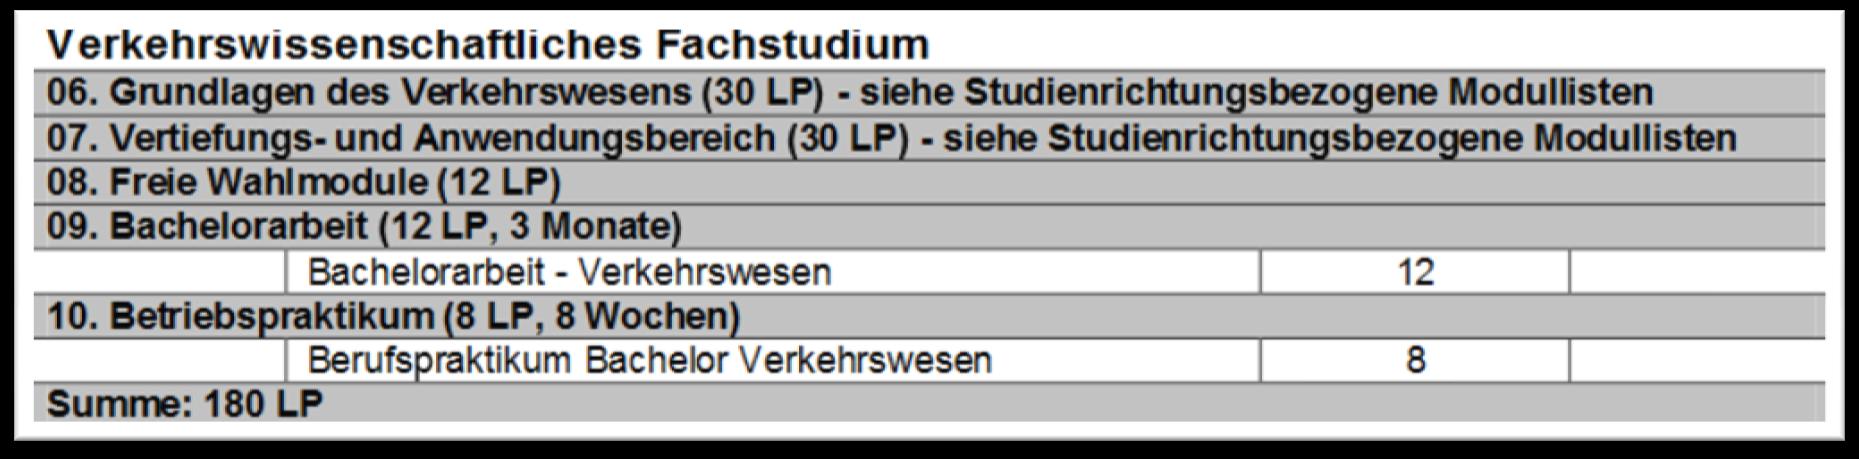 Lehrveranstaltungen der Studienrichtung Planung und Betrieb Informationsmaterial unter: http://www.vm.tu-berlin.